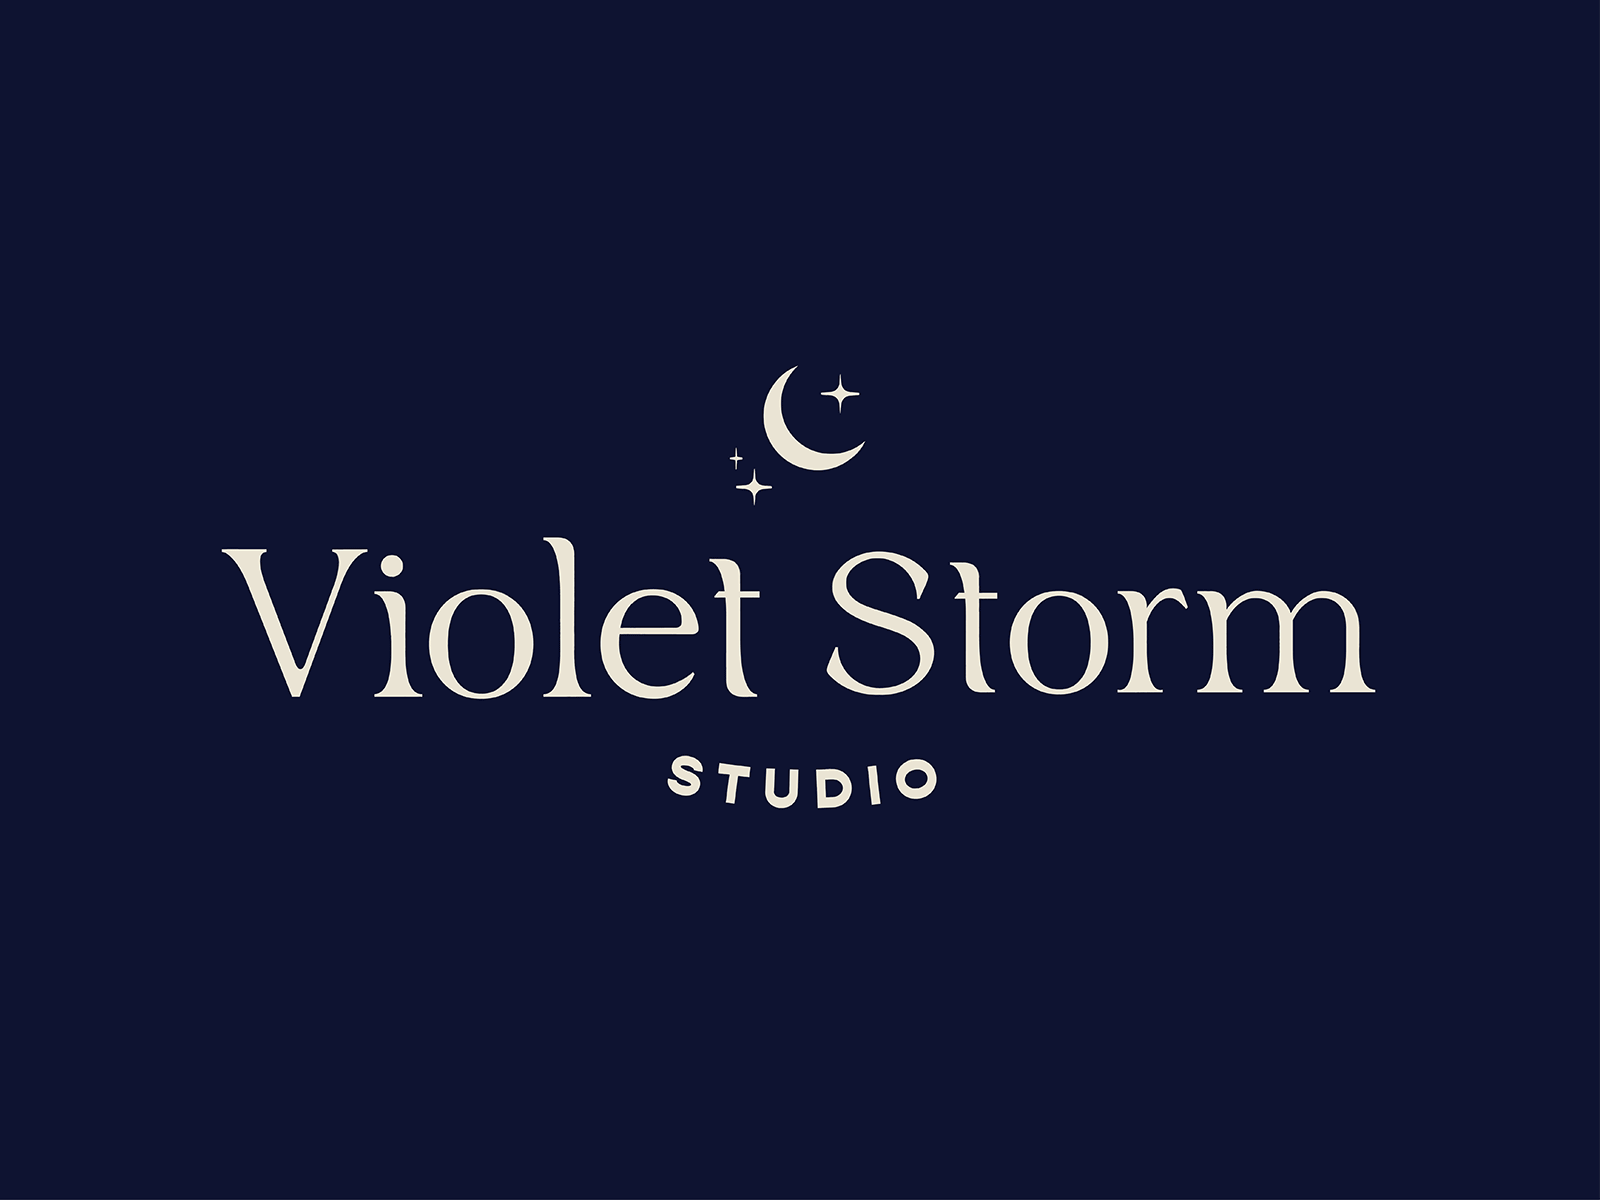 Violet storm